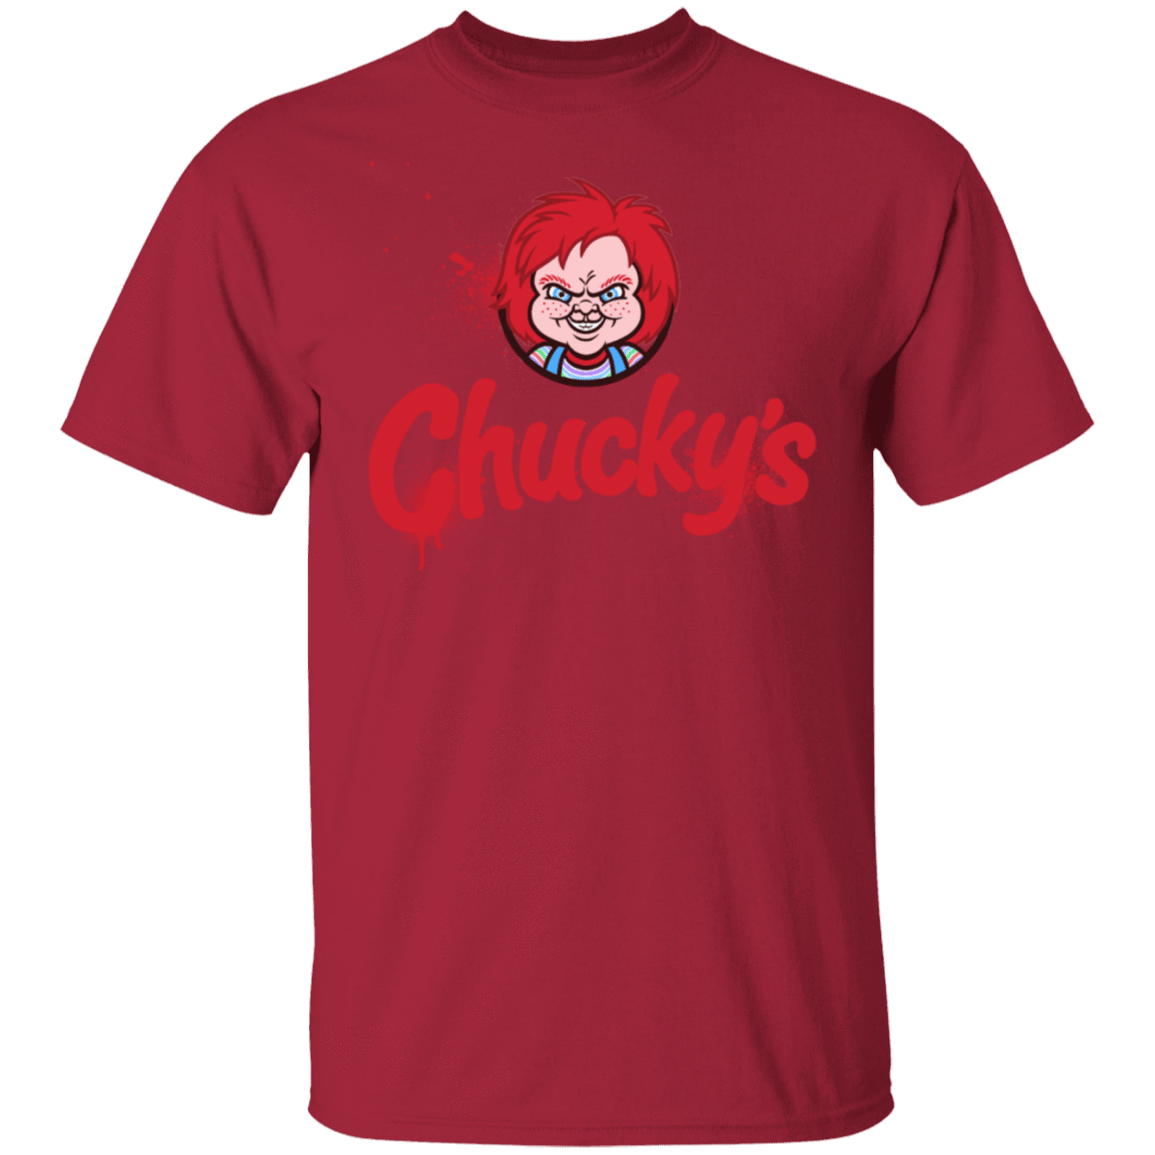 T-Shirts Cardinal / S Chuckys Logo T-Shirt